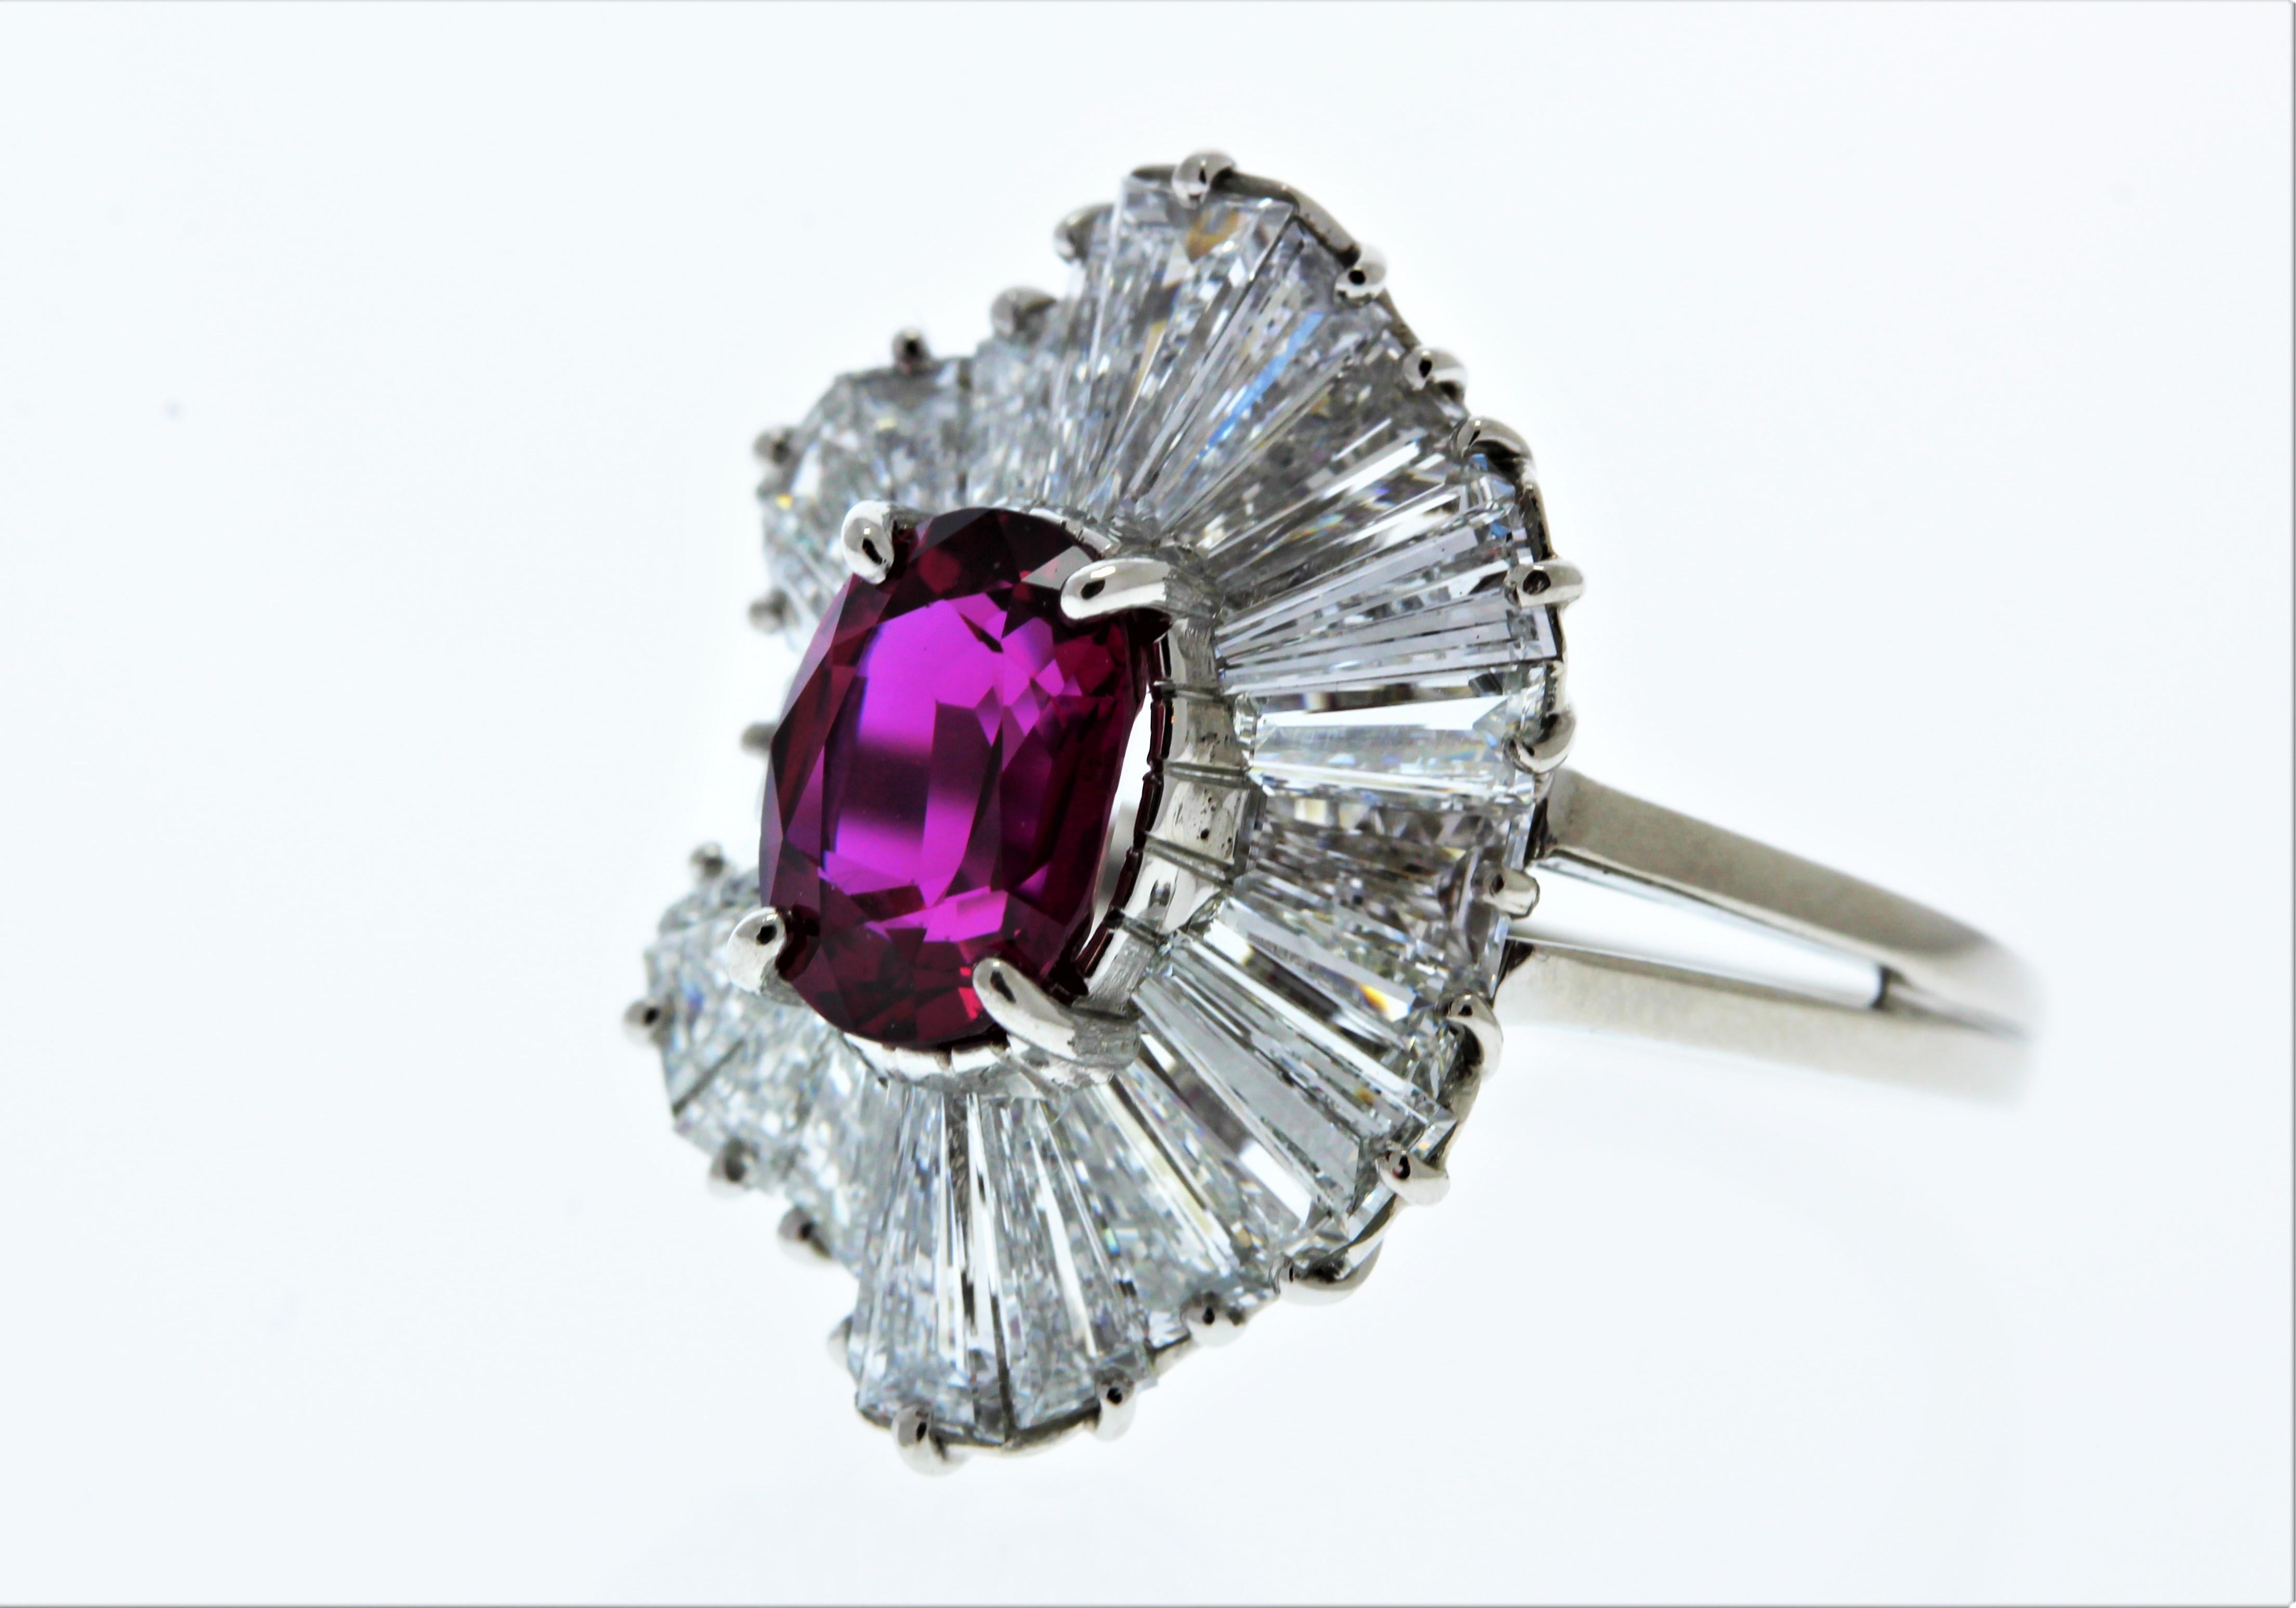 Il s'agit d'un saphir rose vif de 2,00 carats, de qualité gemme, de taille ovale. Sa source de gemme est le Sri Lanka. Sa transparence et son éclat sont excellents. Il est orné d'un halo de diamants taillés mixtes qui totalisent 0,99 carats. Créé en